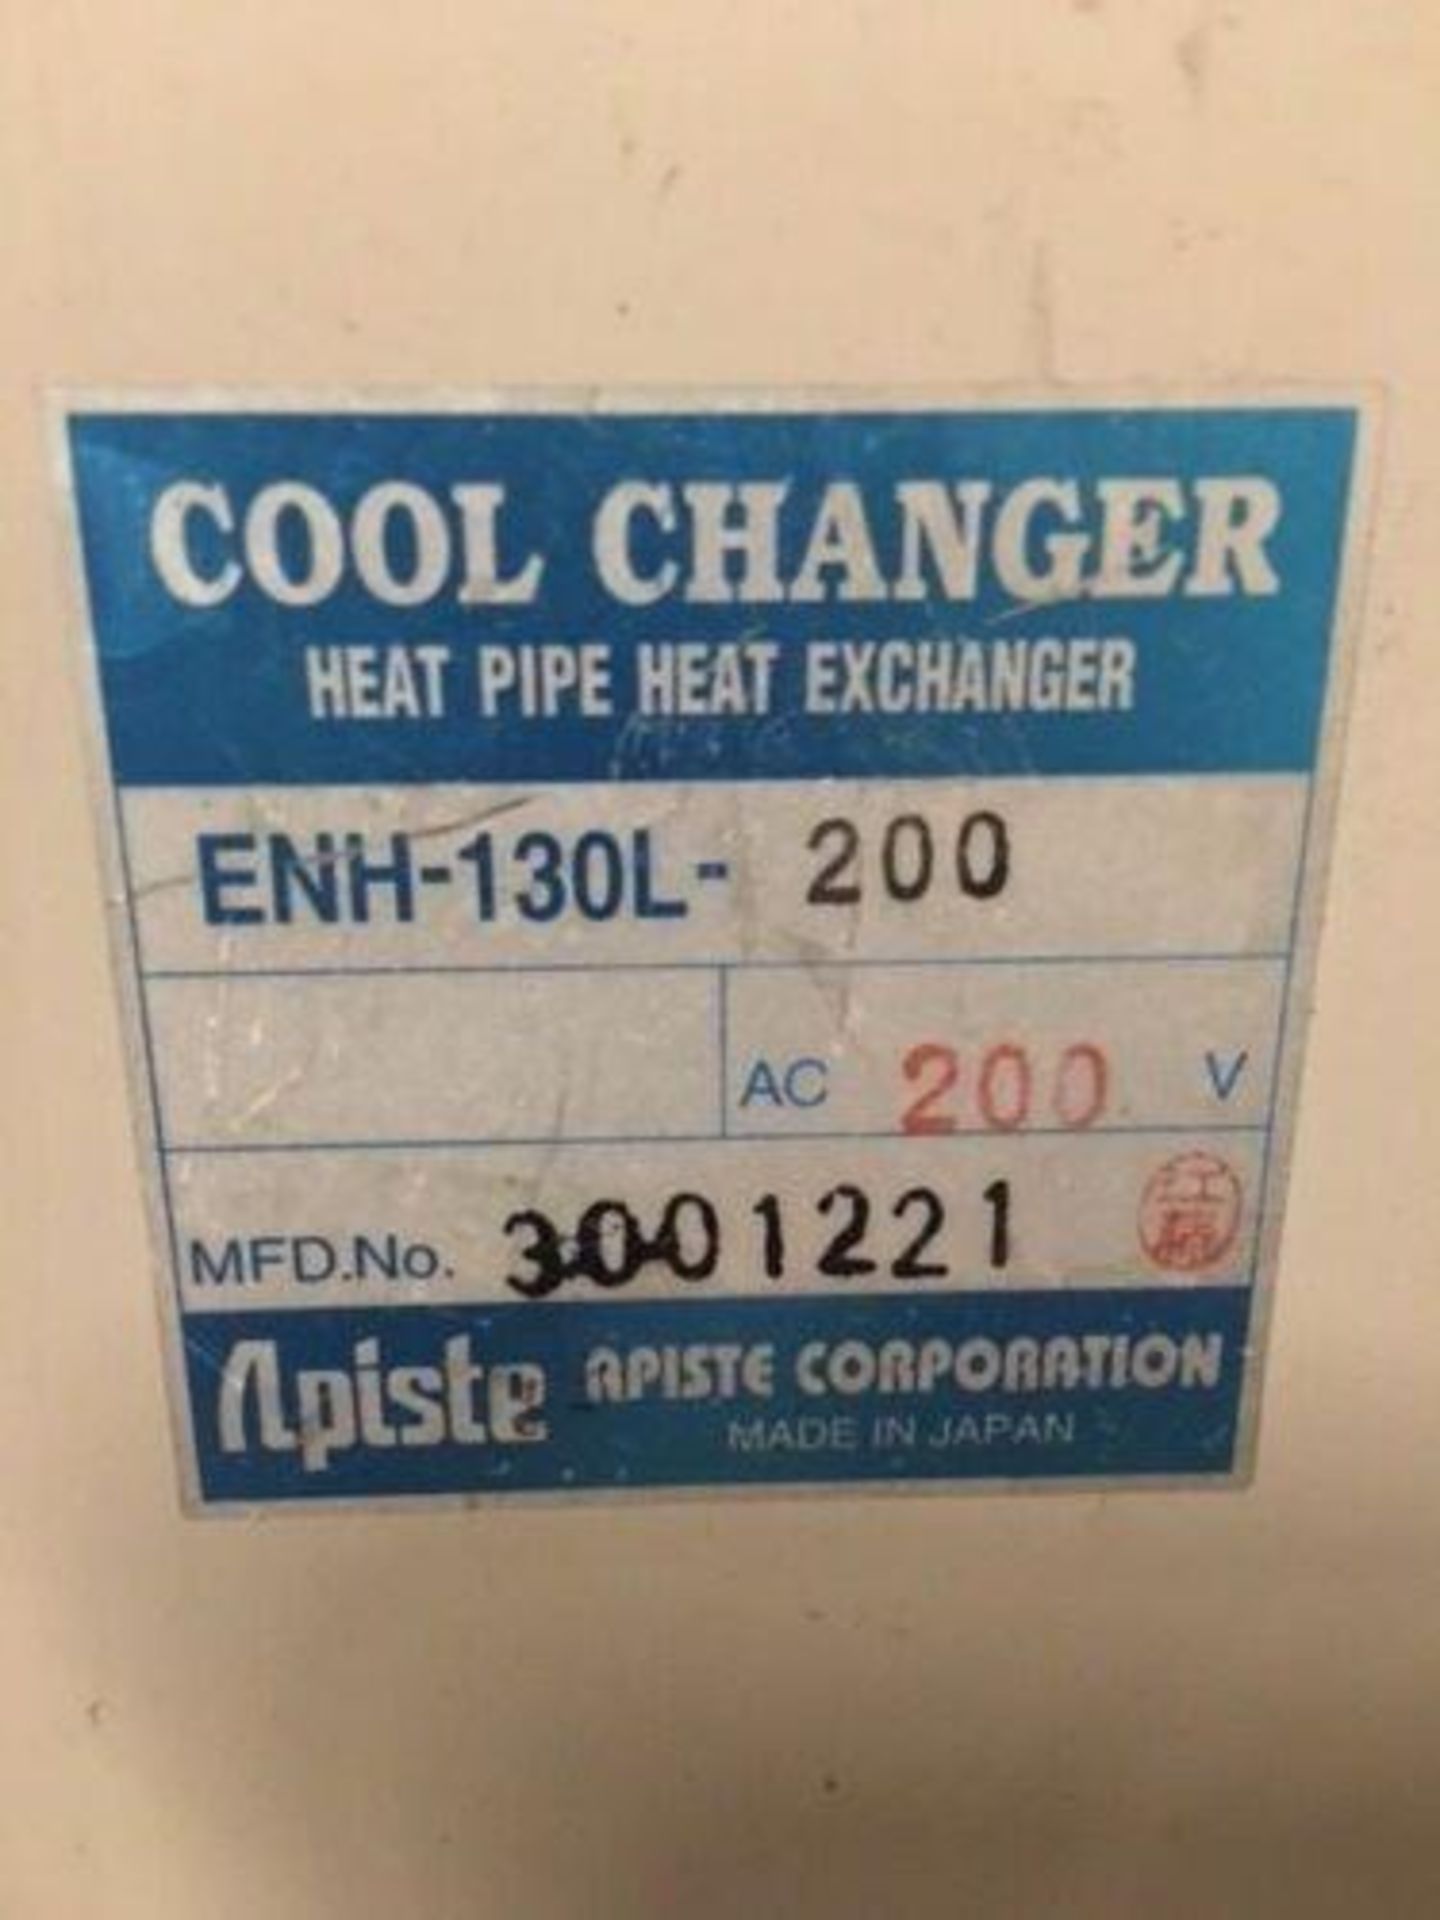 Lot of (8) Apiste Co. Cool Changer Heat Pipe Heat Exchanger, #ENH-130L-200, 200V - Image 4 of 4